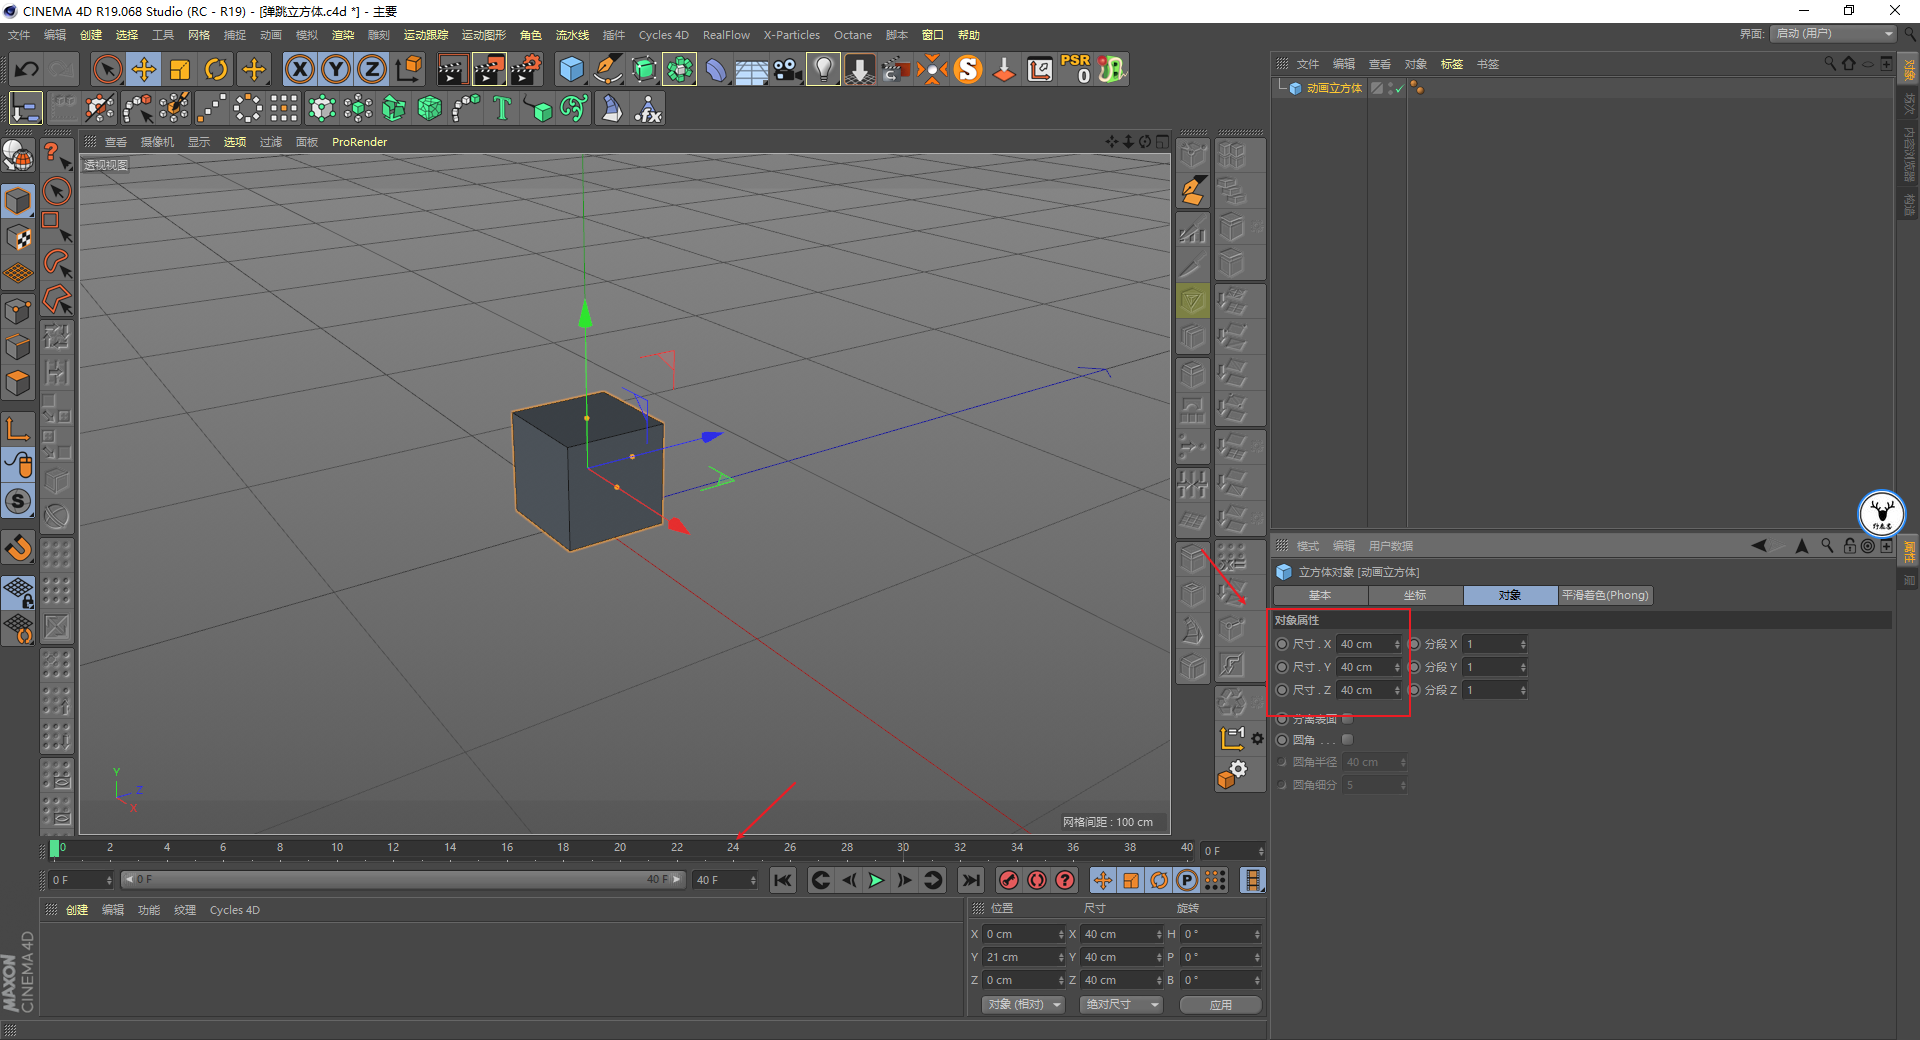 用C4D软件中自带的破碎功能来制作弹跳的立方体动画效果